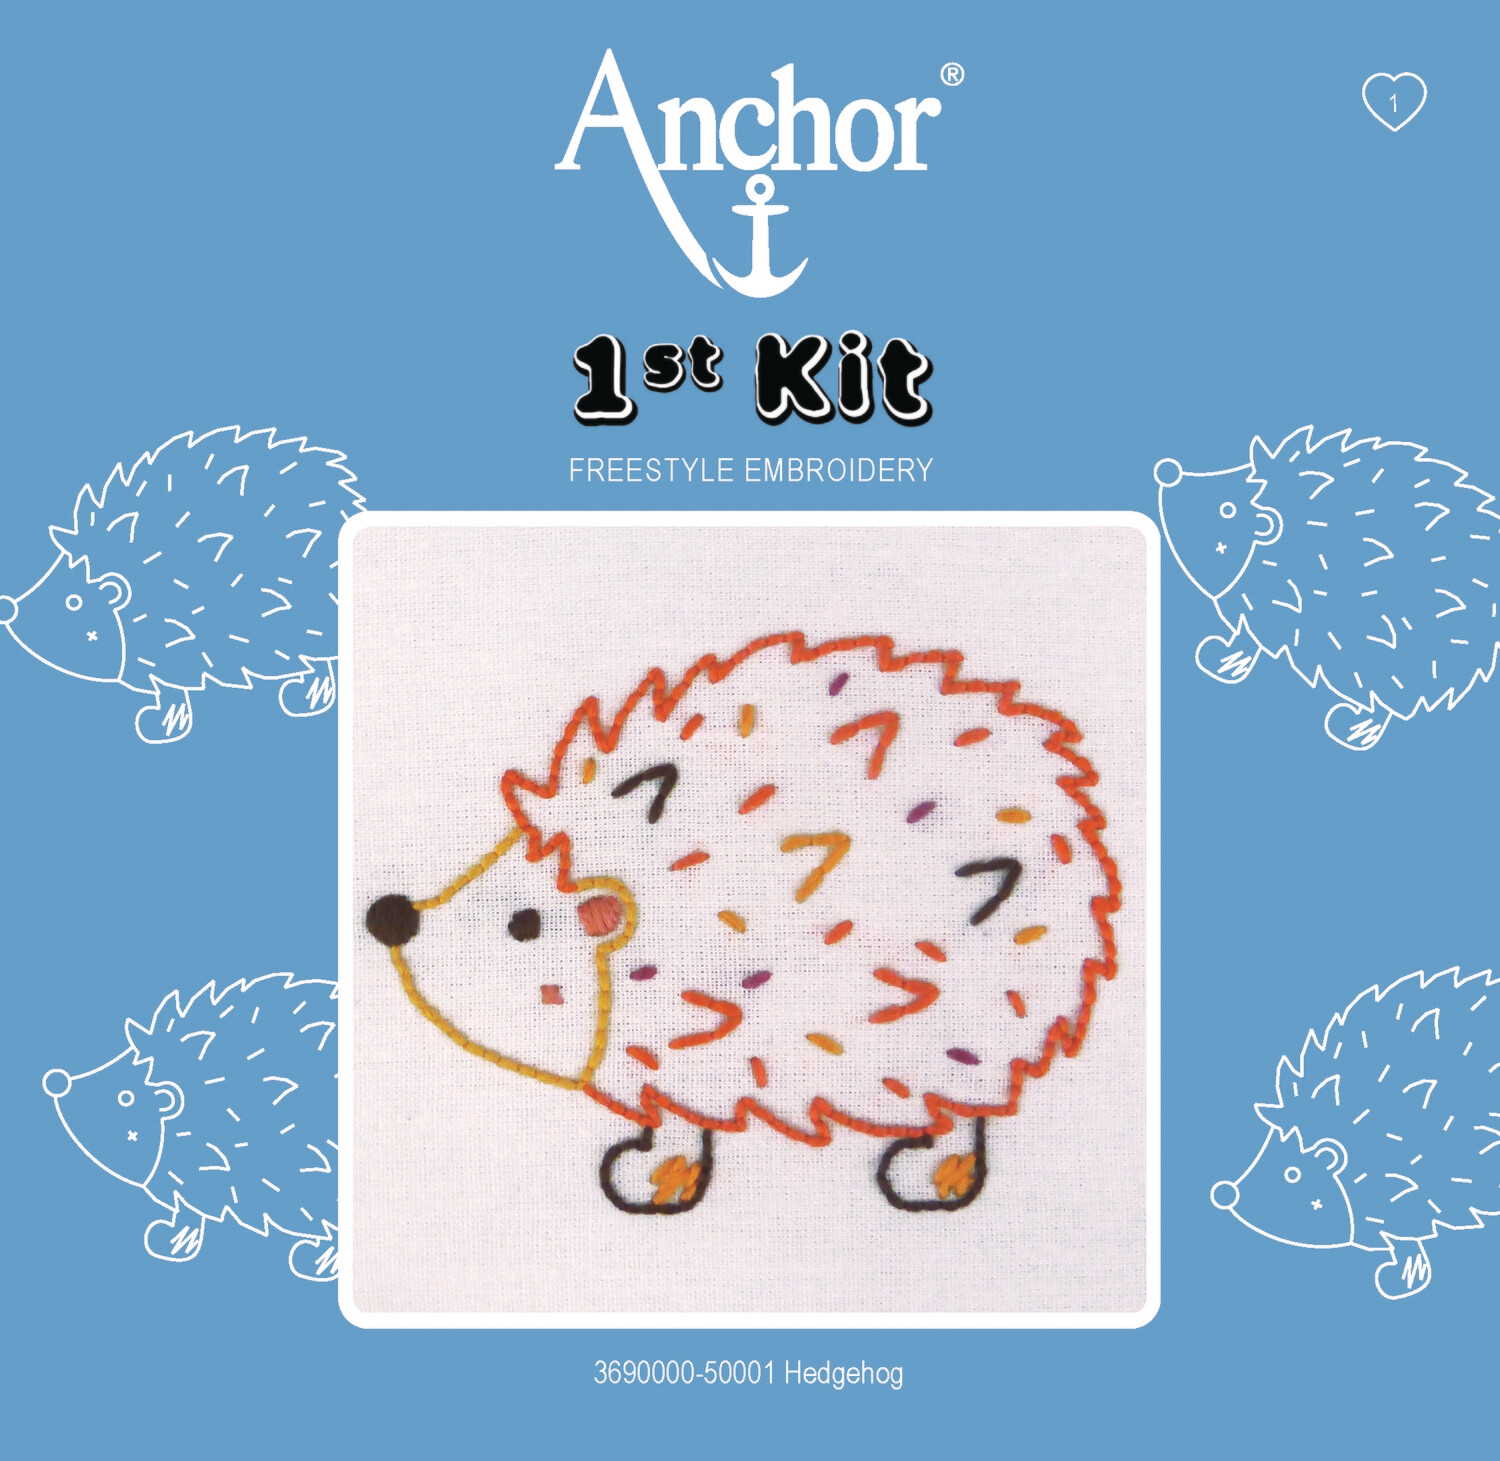 Anchor '1st Kit' gobelin hímzőkészlet gyerekeknek. Süni 5001